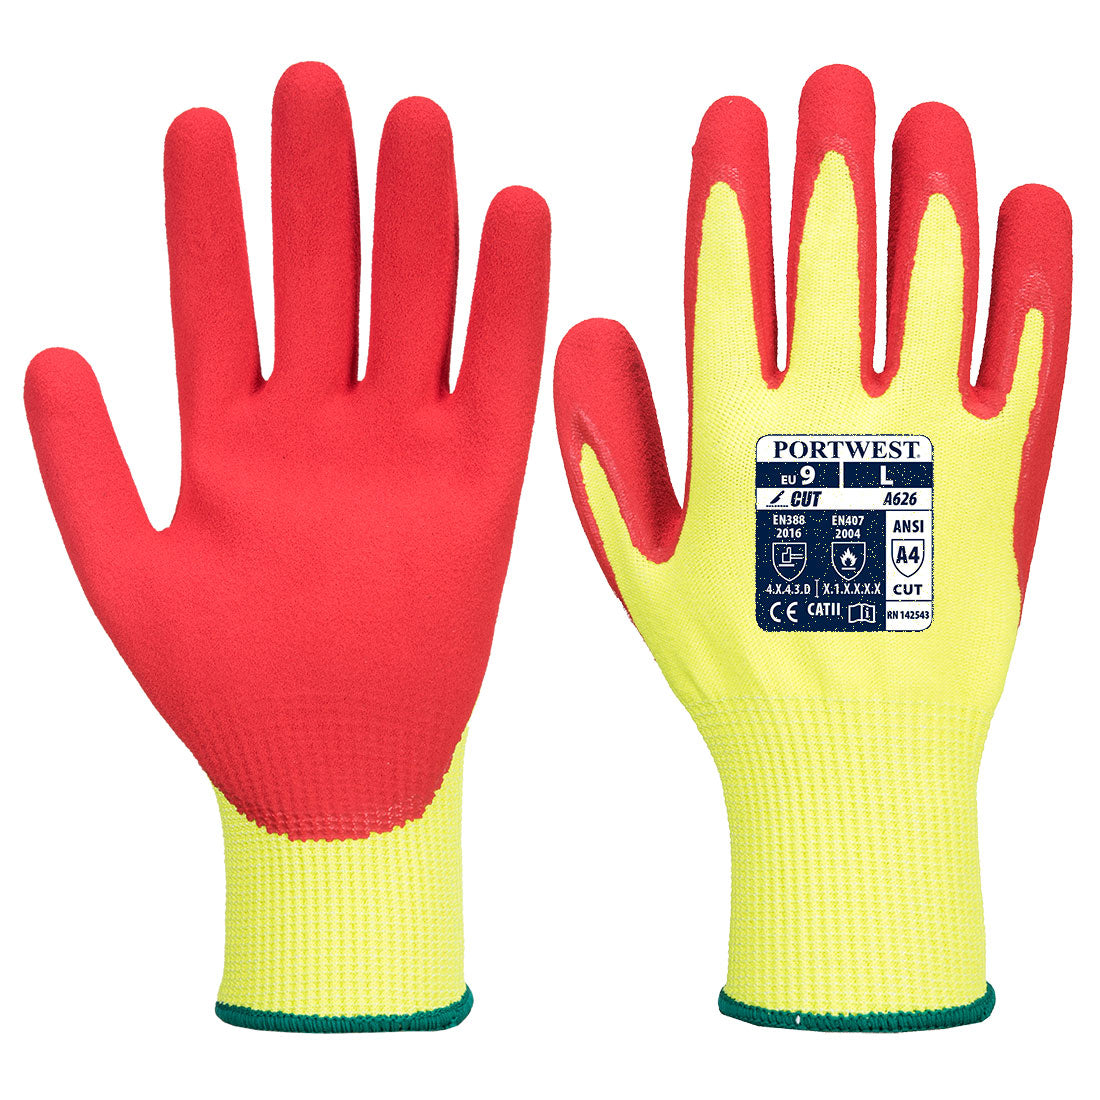 ANSI/ISEA 105-2016 A7 PU Coated CR Gloves